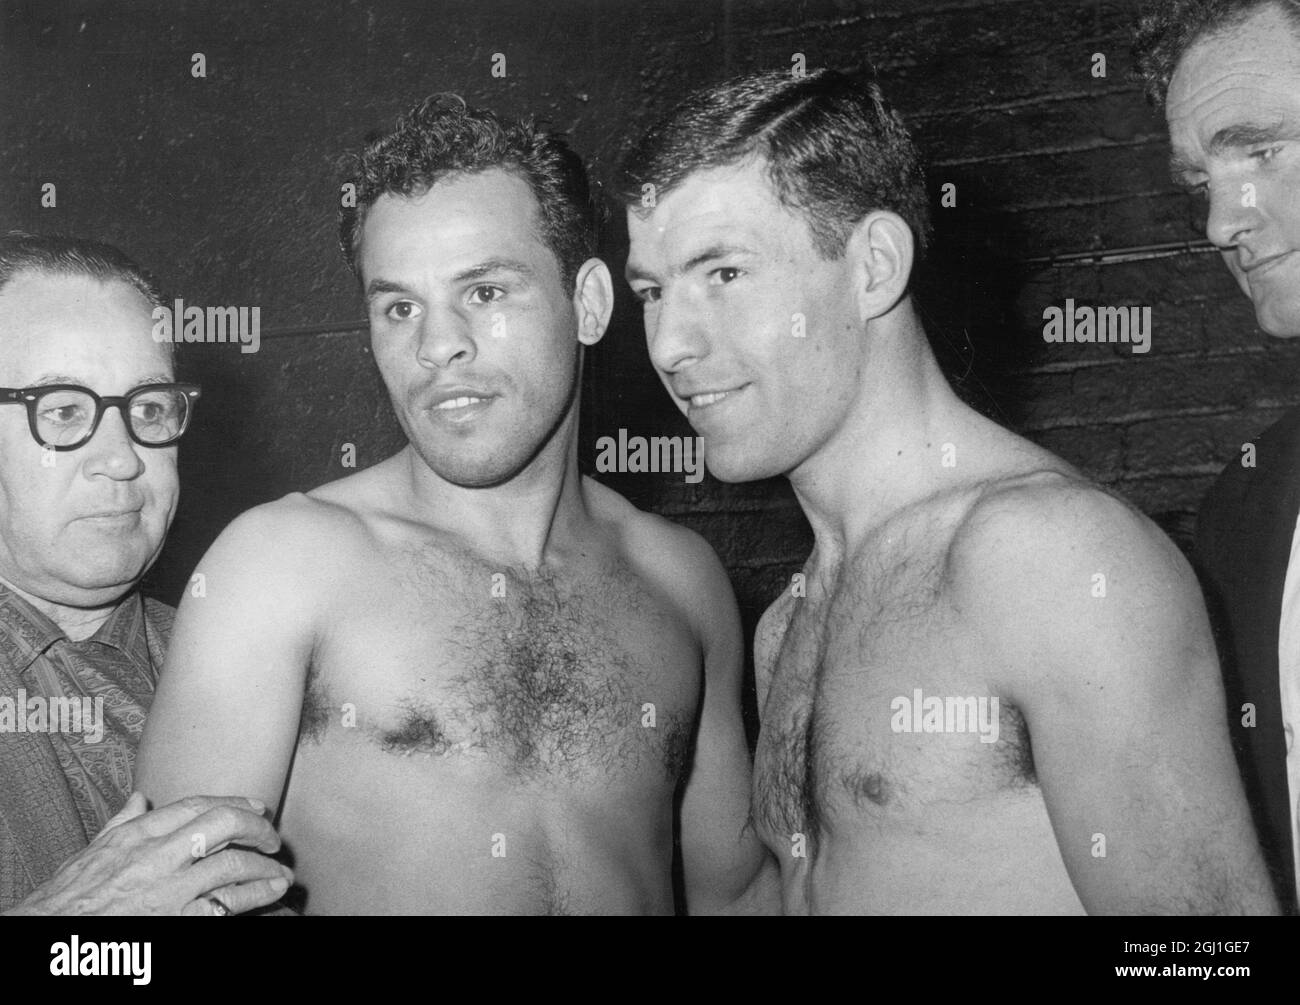 Brian Curvis boxer de Swansea, pays de Galles et Ralph Dupas boxer de la Nouvelle-Orléans USA (à gauche) vu au Weigh In avant les Championnats du monde de poids-lourd Wembley Londres septembre 1962 Banque D'Images